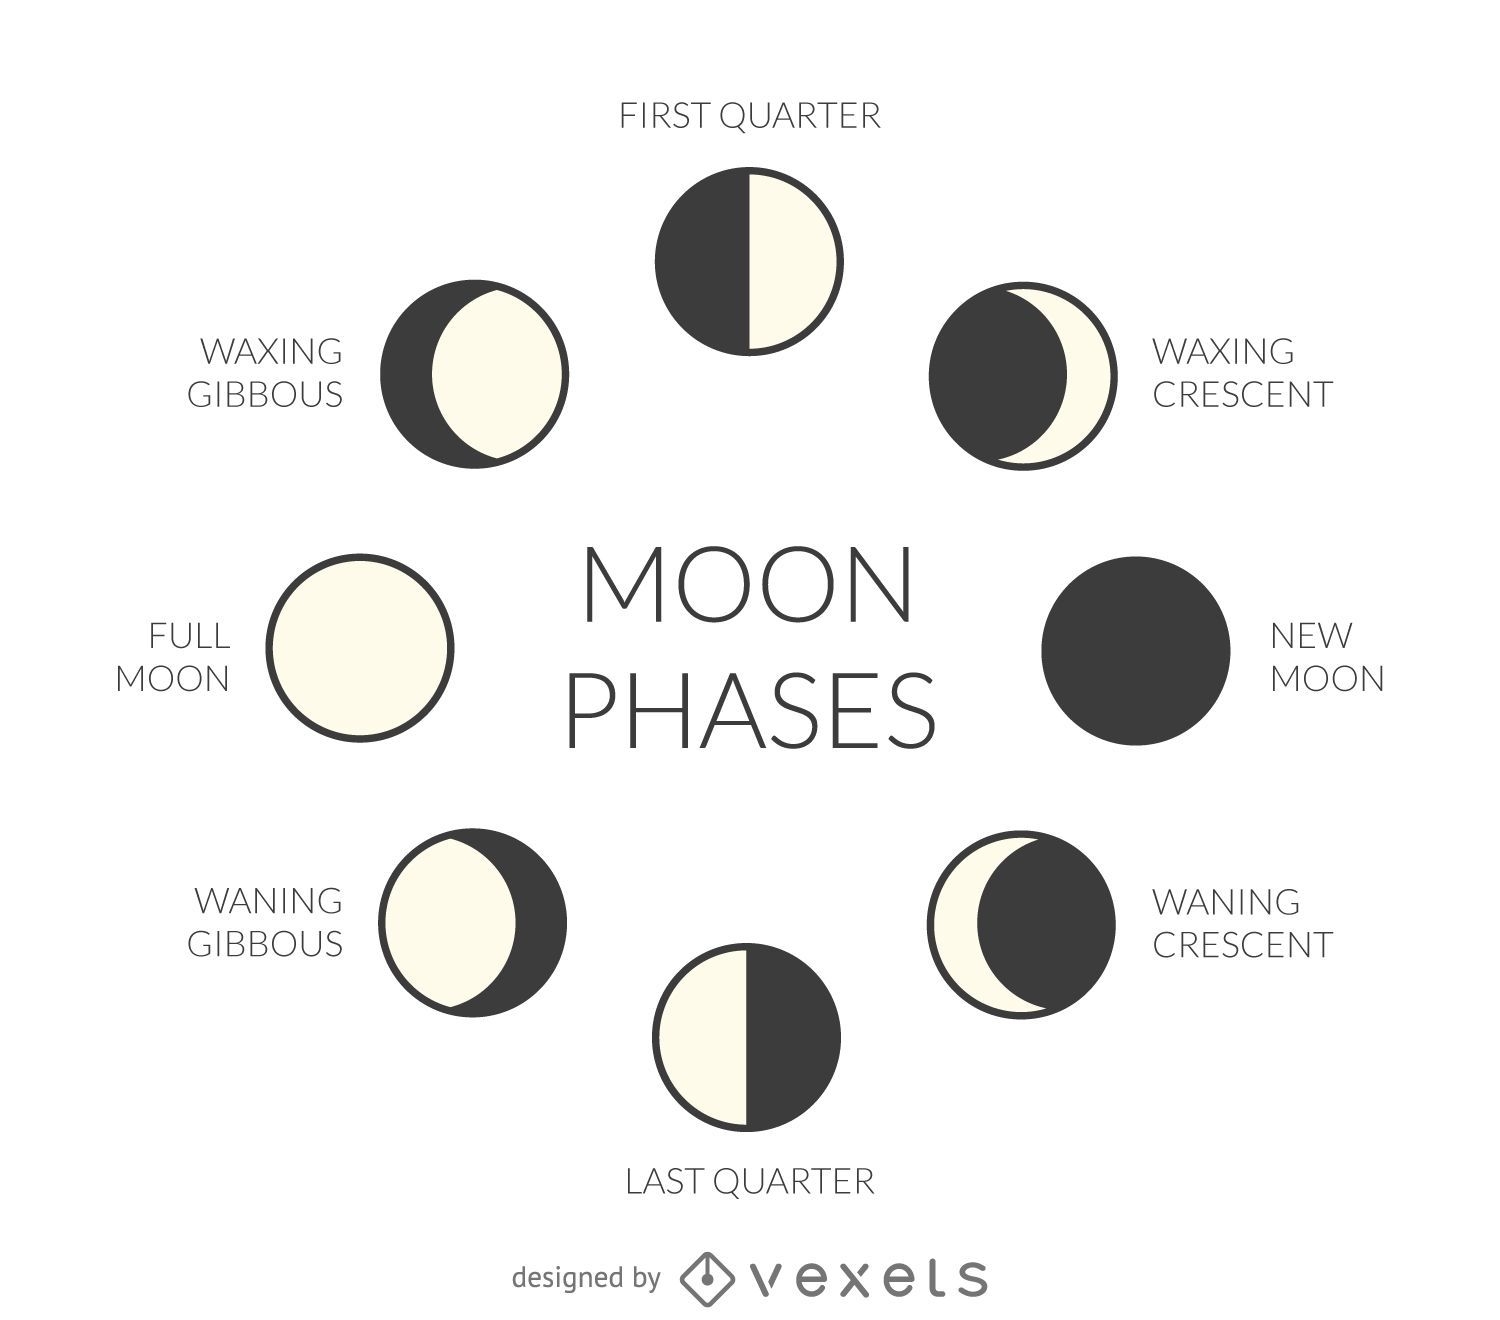 Fases da lua ilustradas